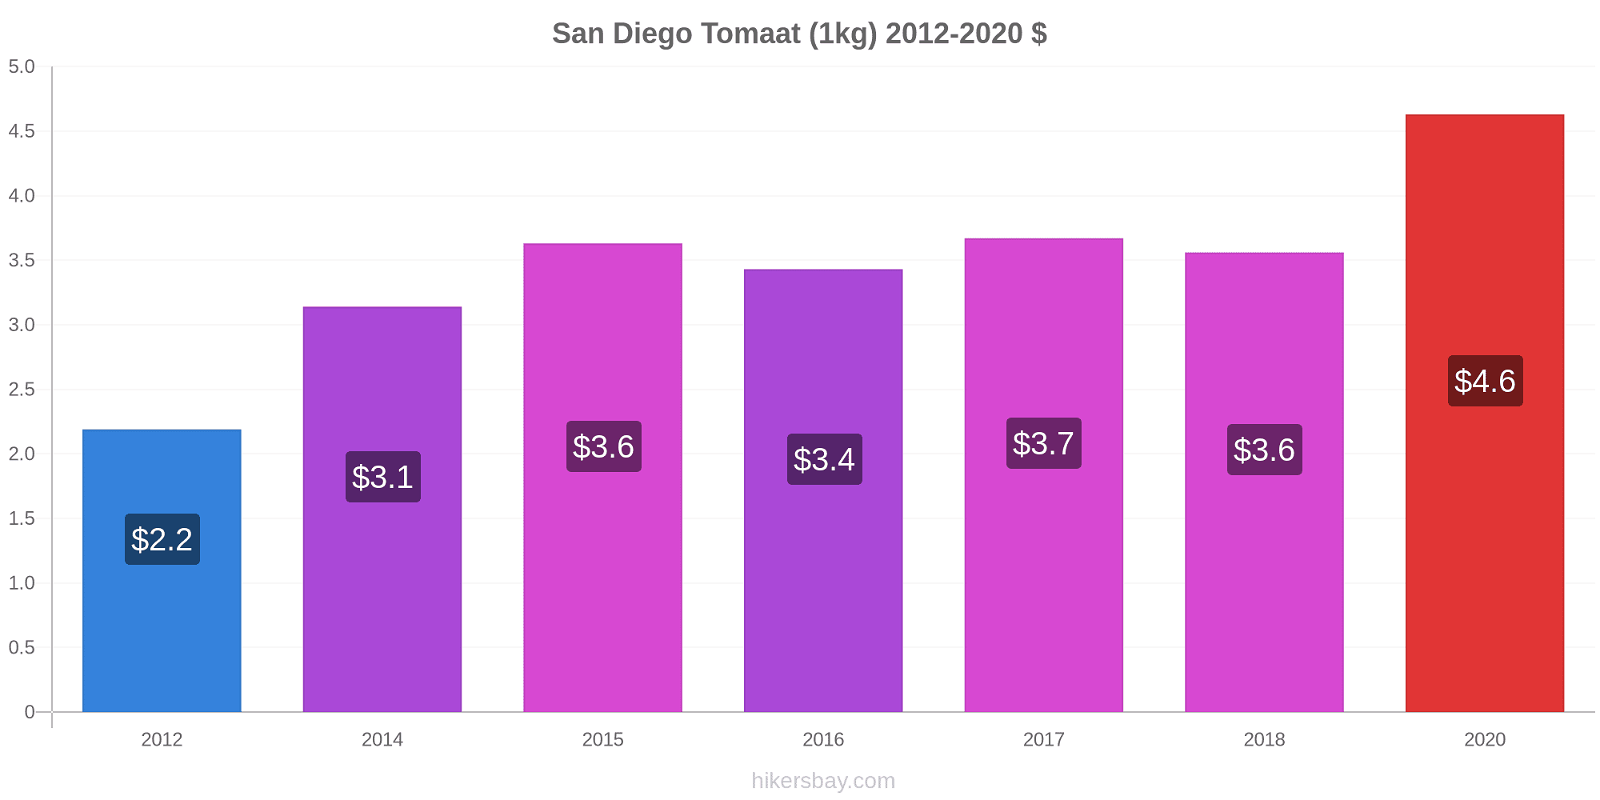 San Diego prijswijzigingen Tomaat (1kg) hikersbay.com